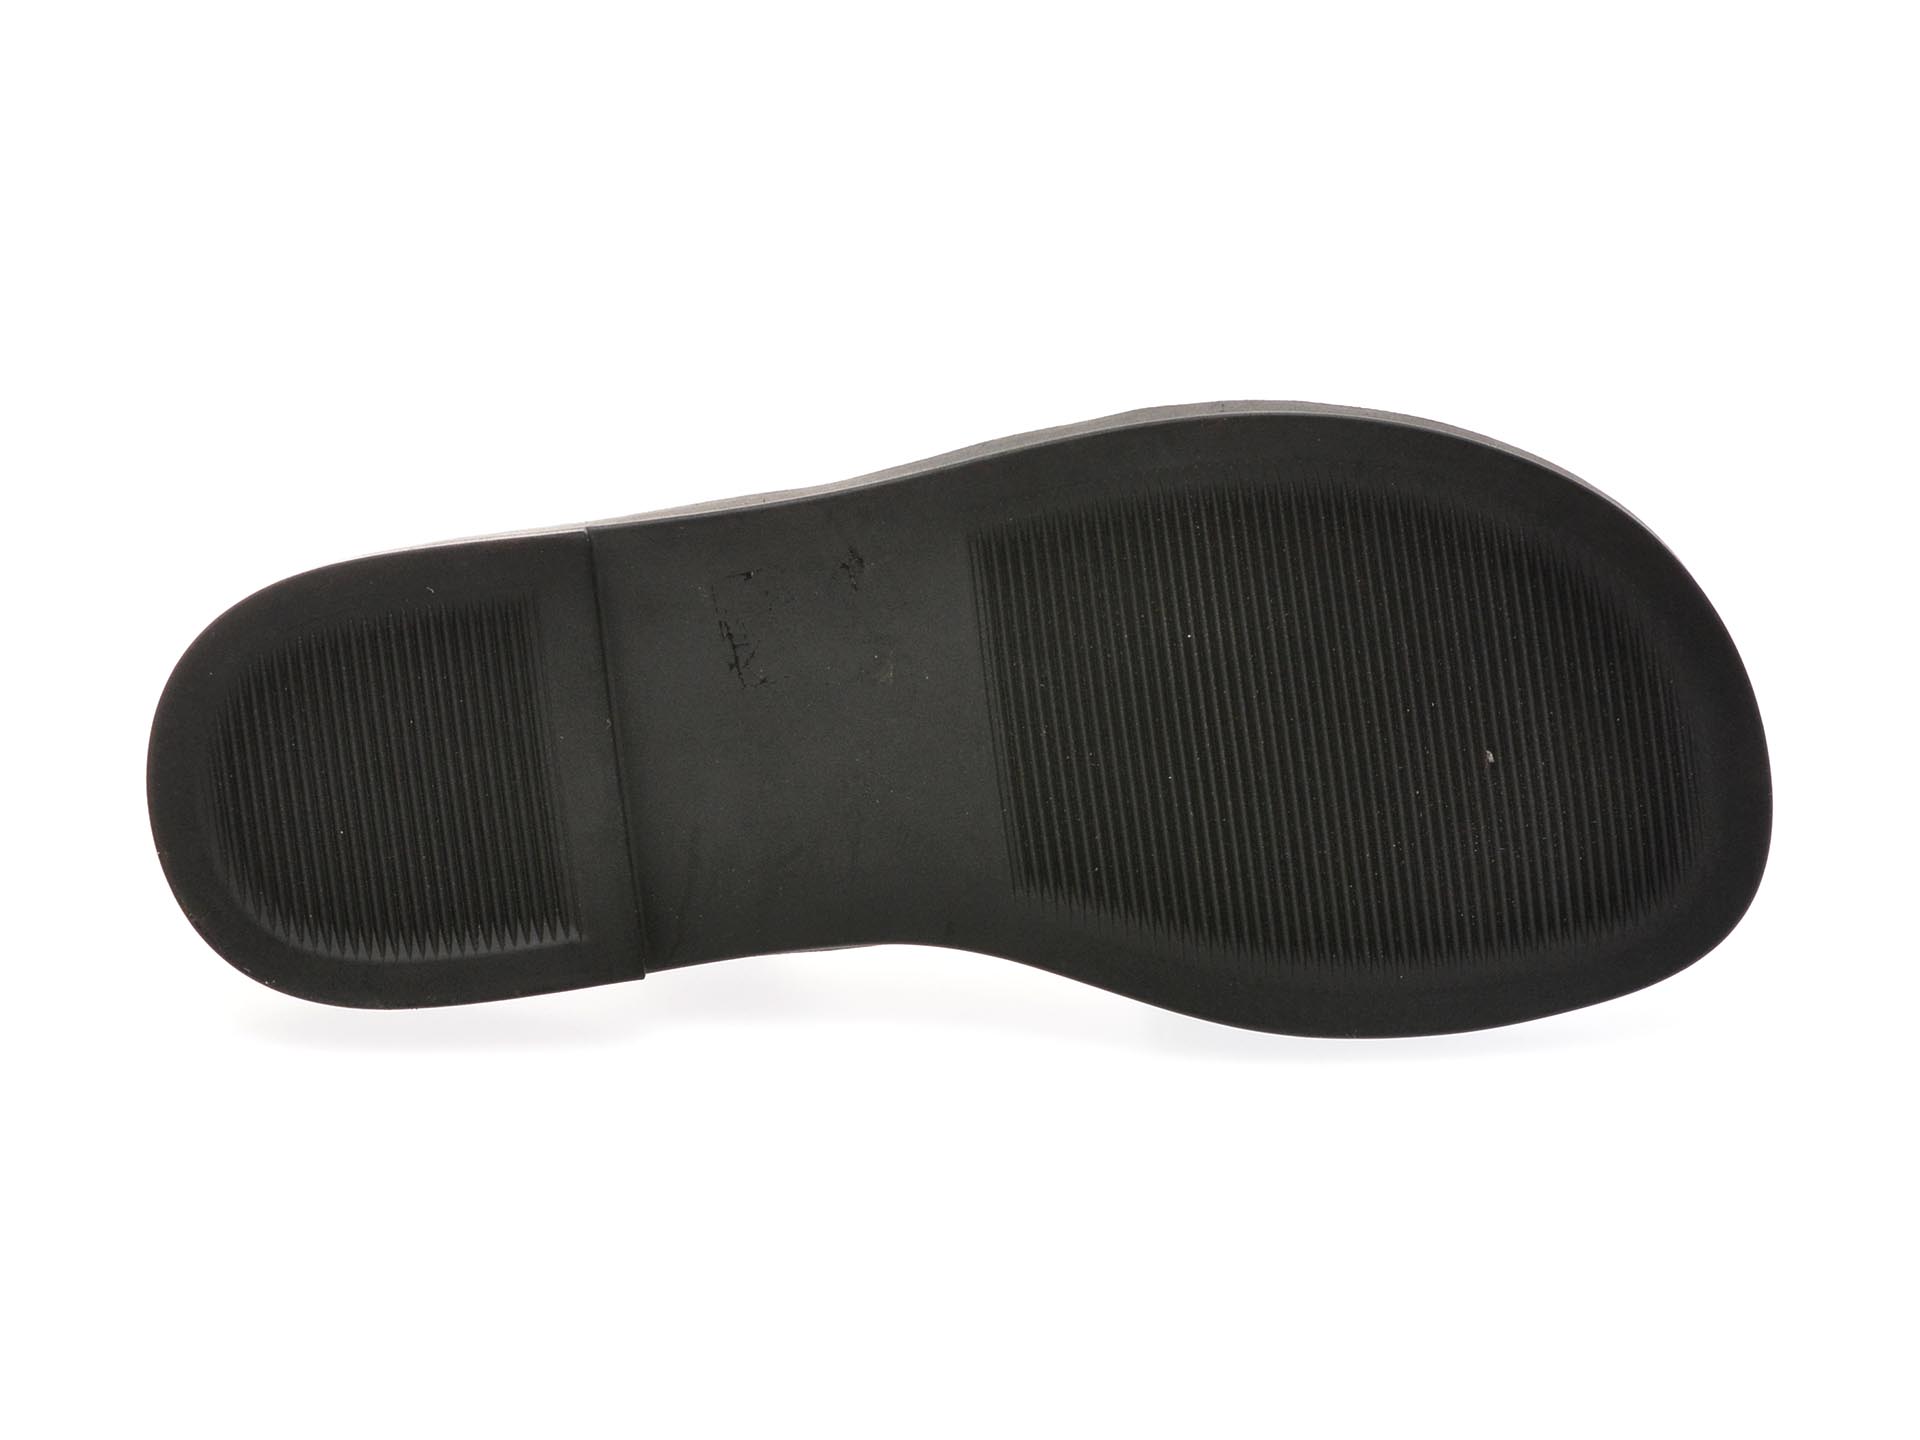 Sandale casual GRYXX negre, UZ1909, din piele naturala lacuita